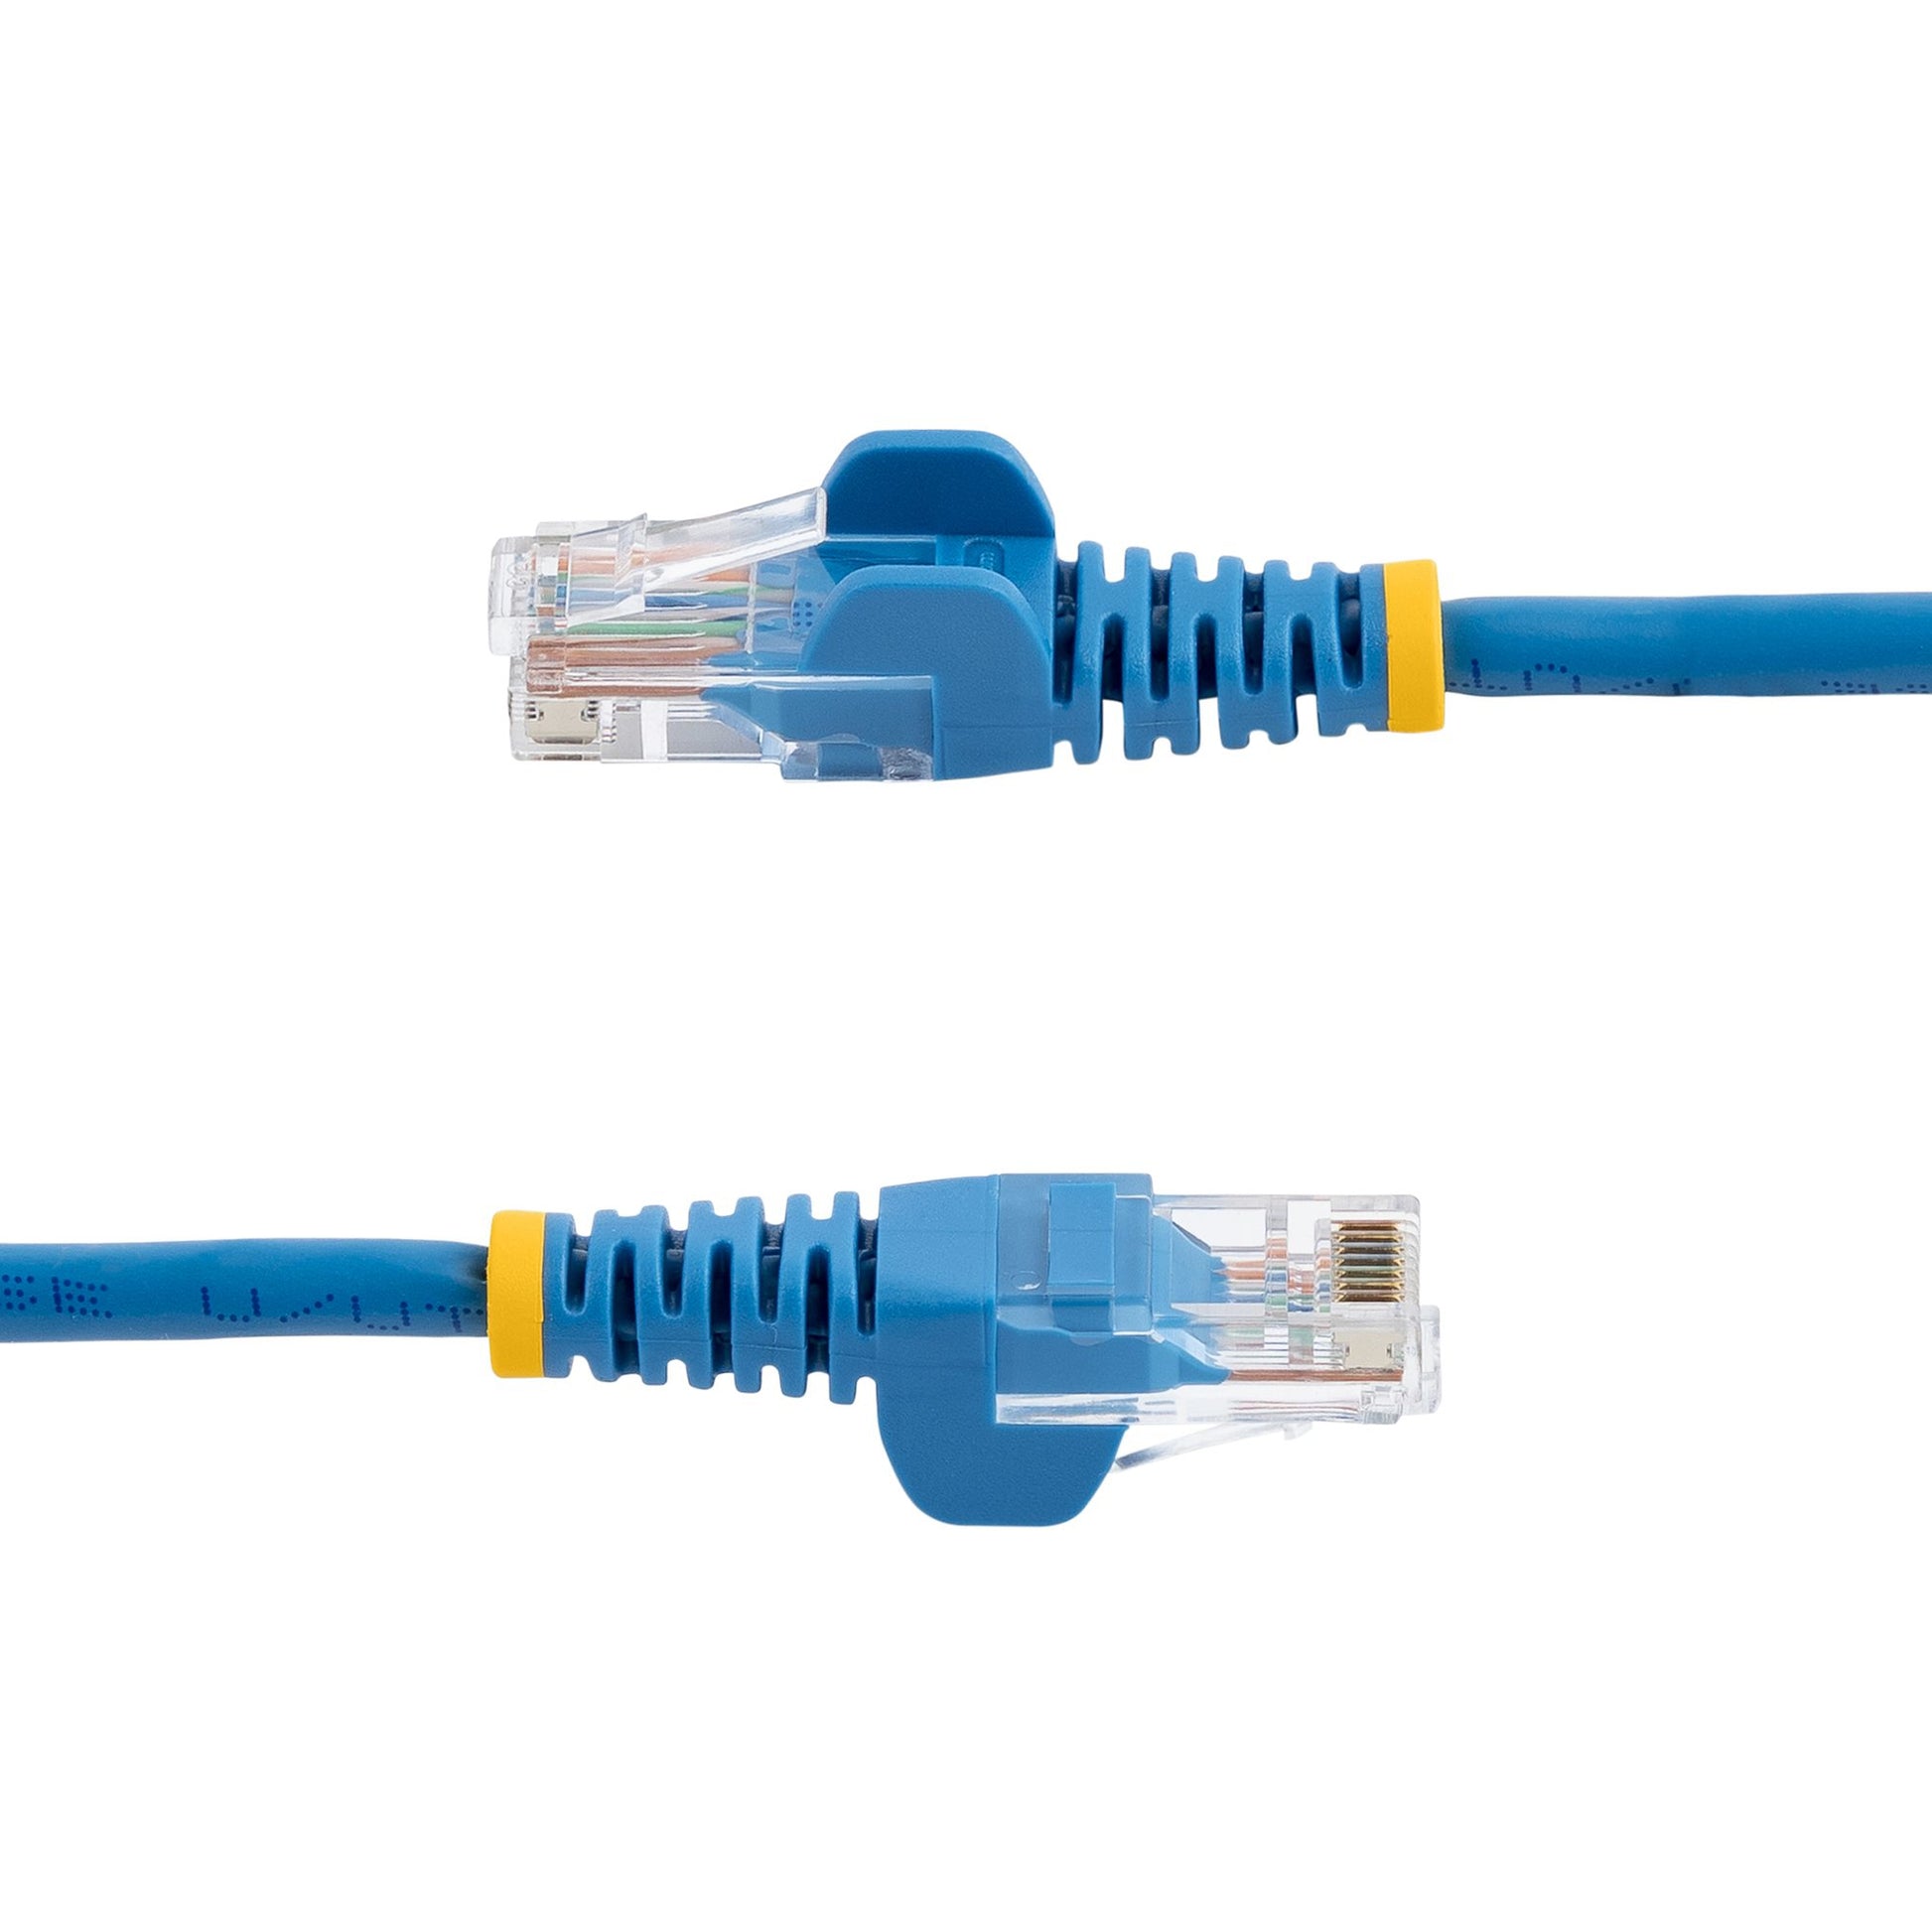 StarTech.com Cat5e Patch Cable with Snagless RJ45 Connectors - 3m, Blue-2